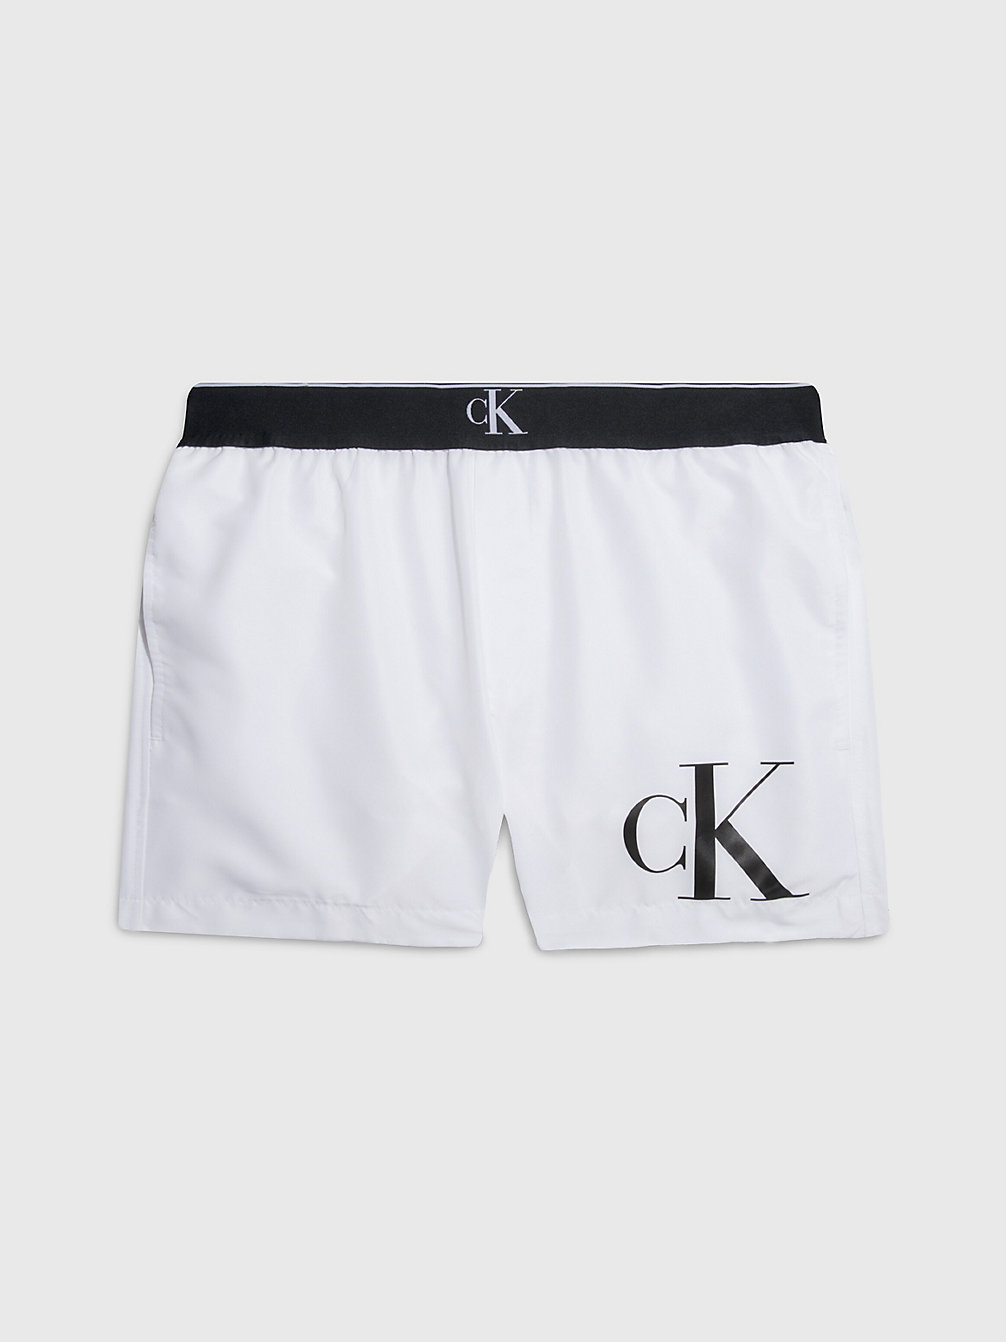 PVH CLASSIC WHITE > Badeshorts – CK Monogram > undefined Herren - Calvin Klein